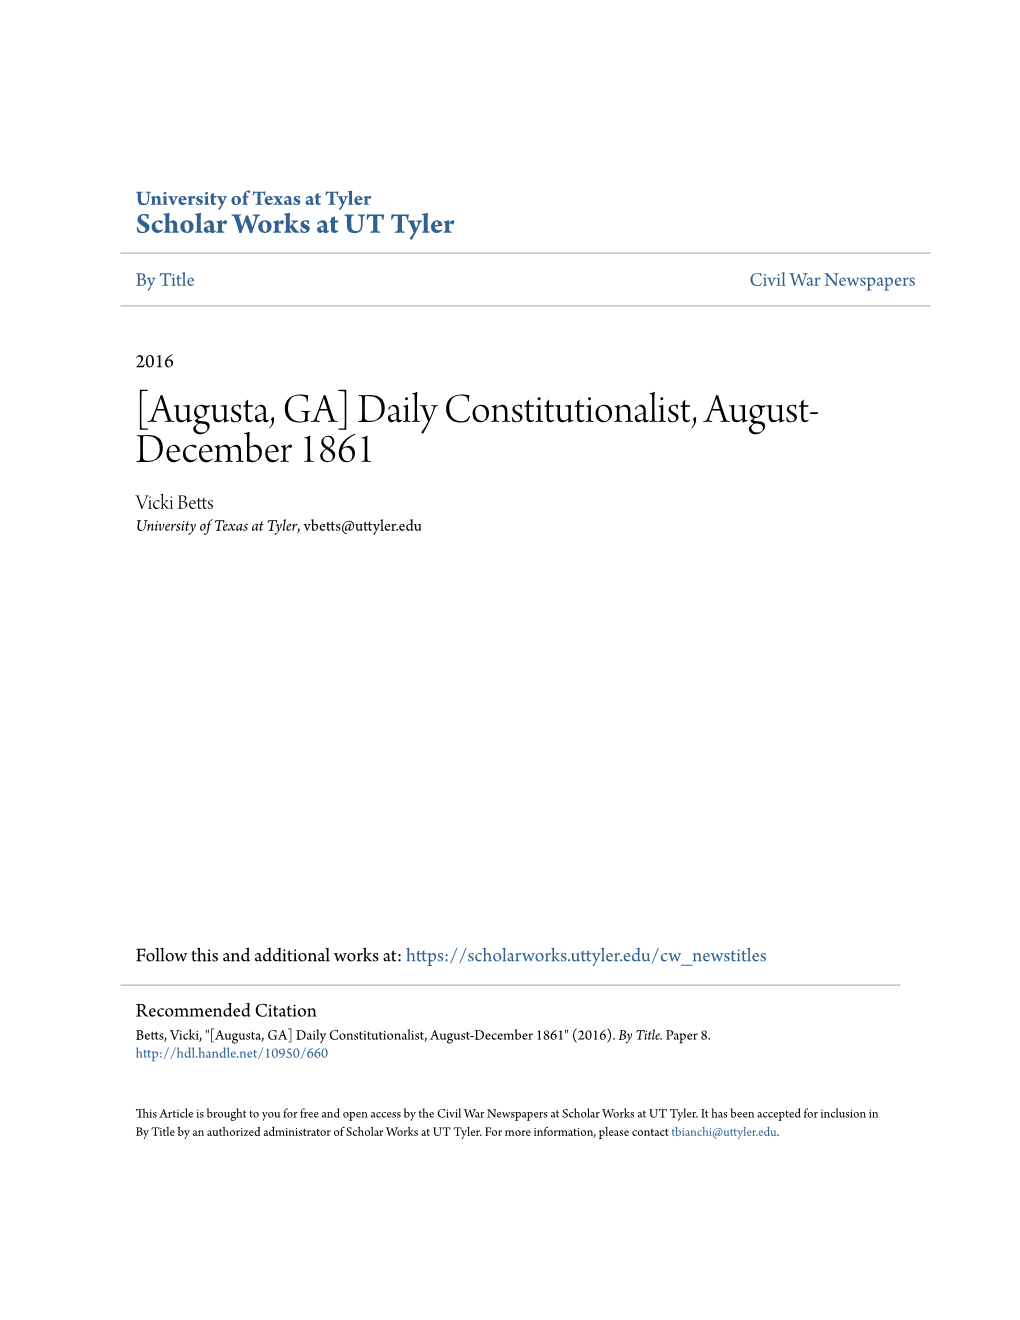 Augusta, GA] Daily Constitutionalist, August- December 1861 Vicki Betts University of Texas at Tyler, Vbetts@Uttyler.Edu